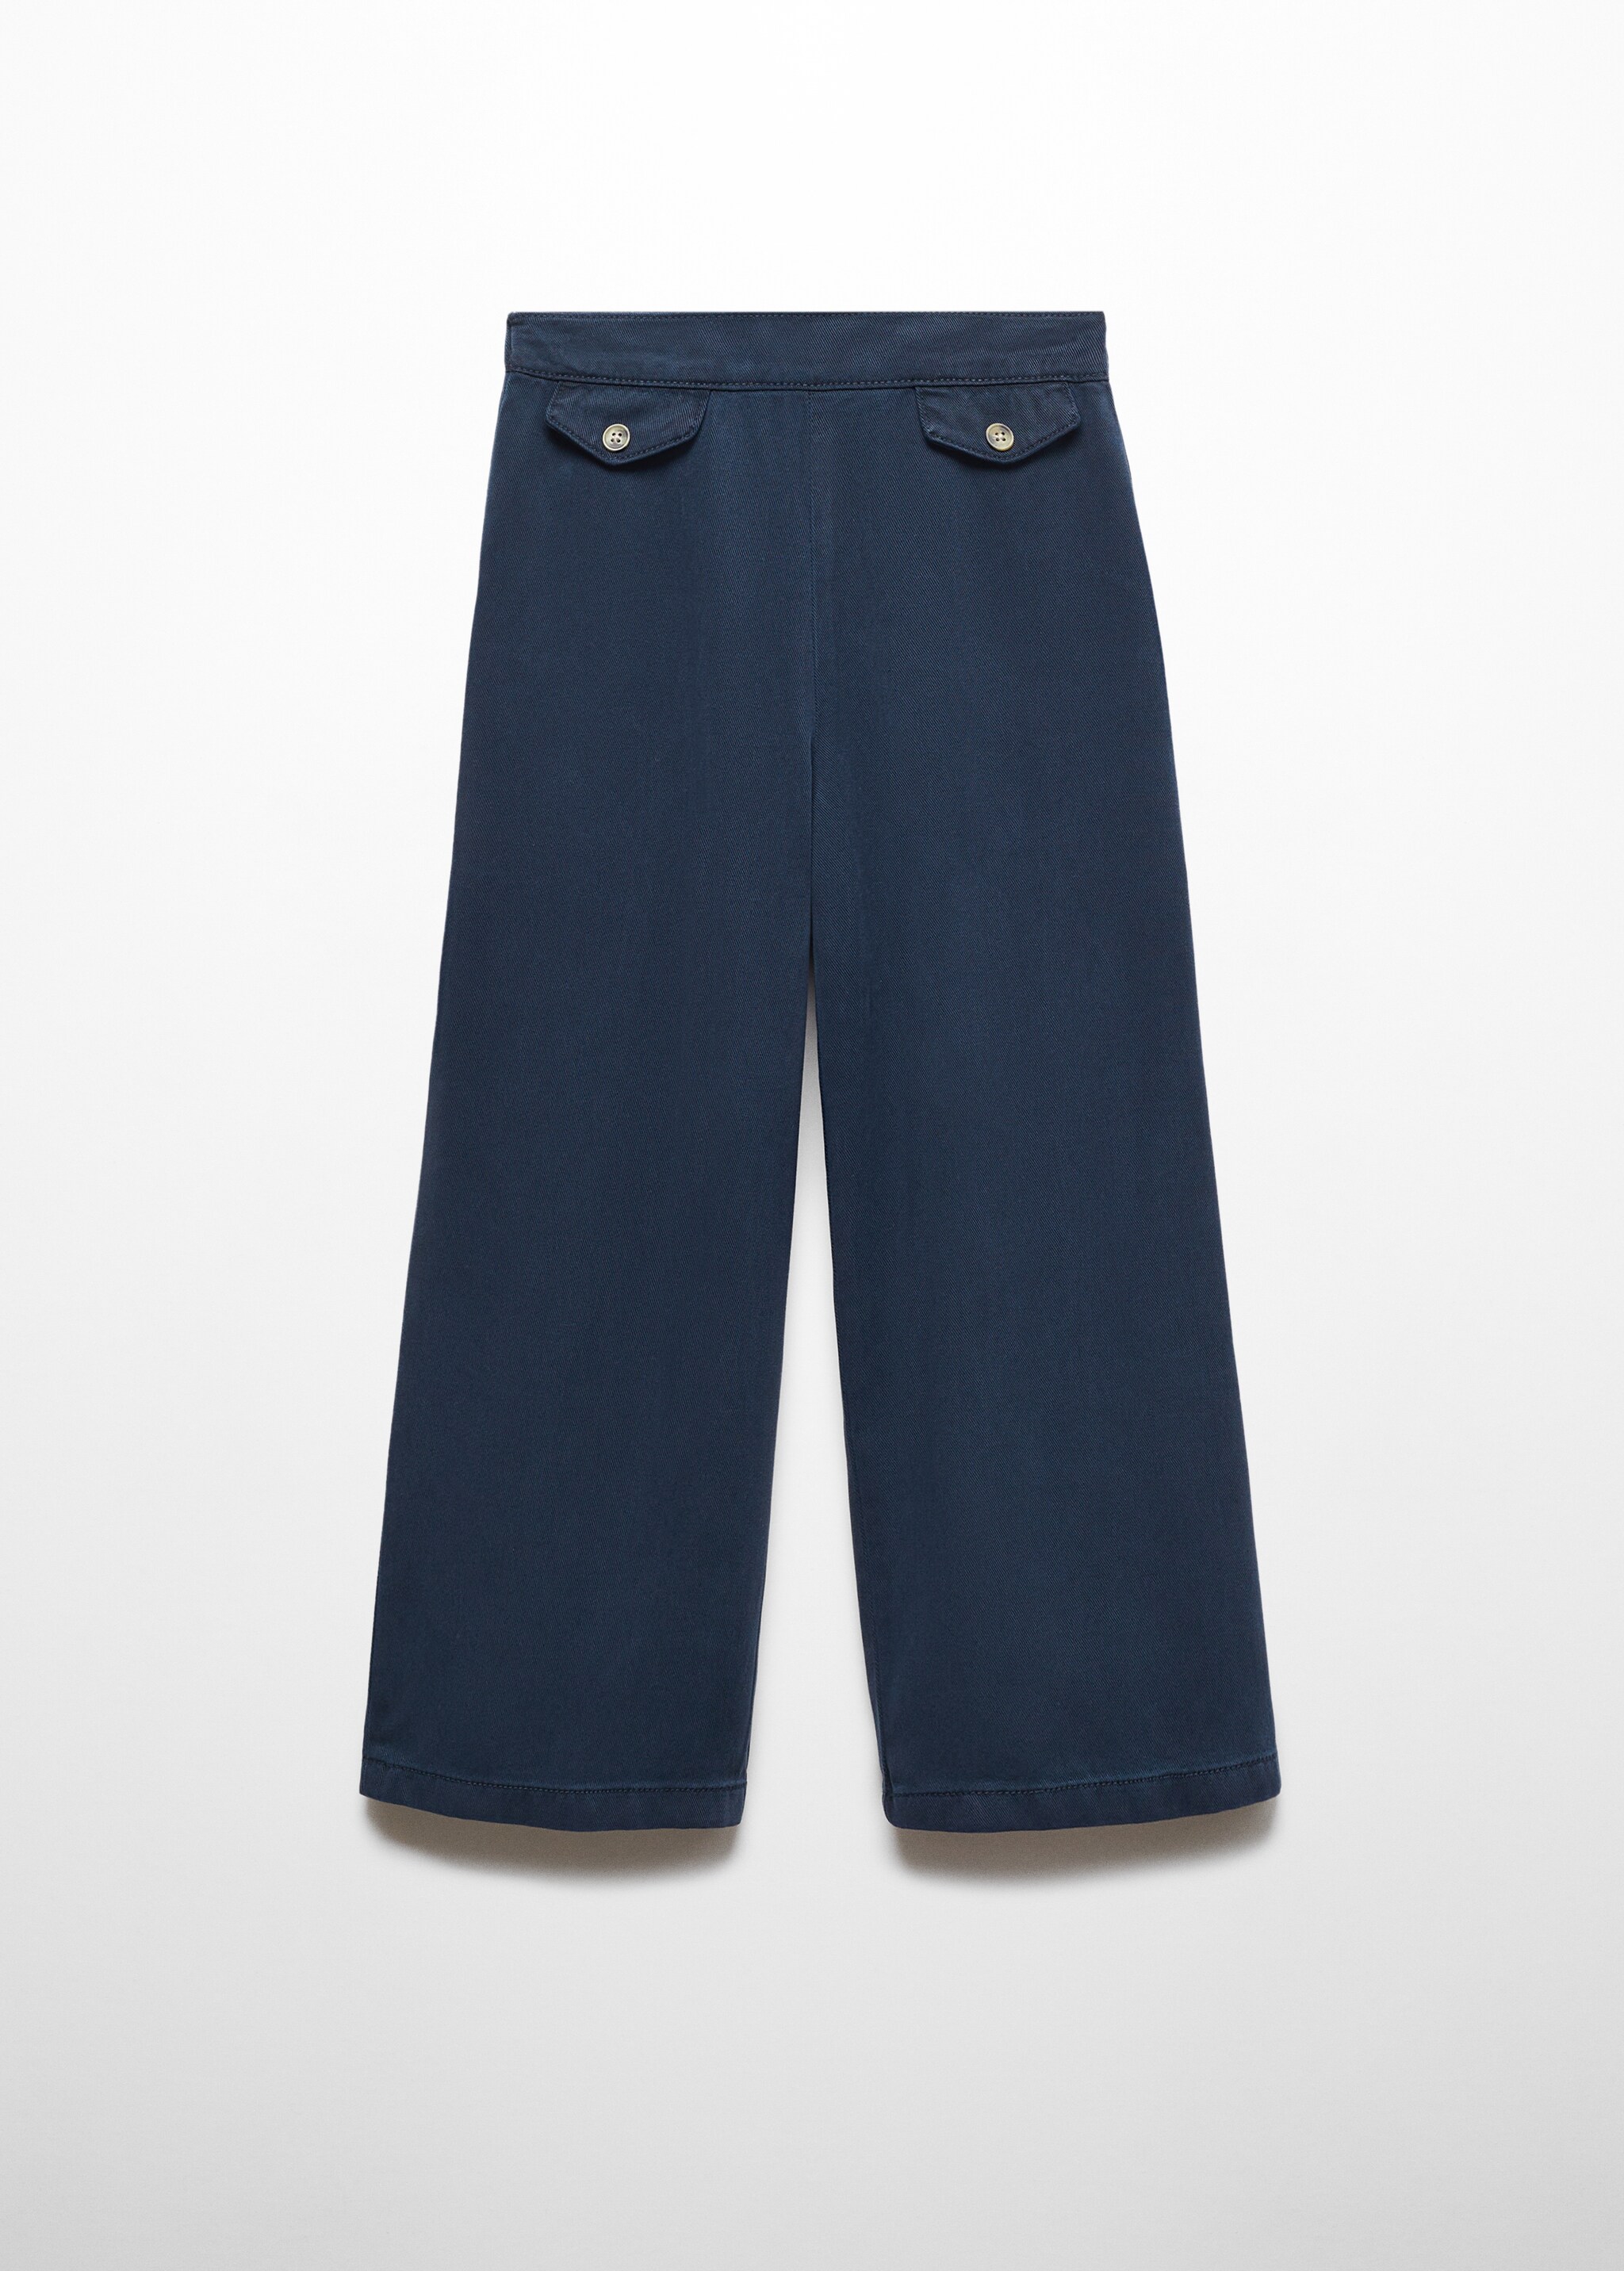 Pantalón culotte botones - Artículo sin modelo